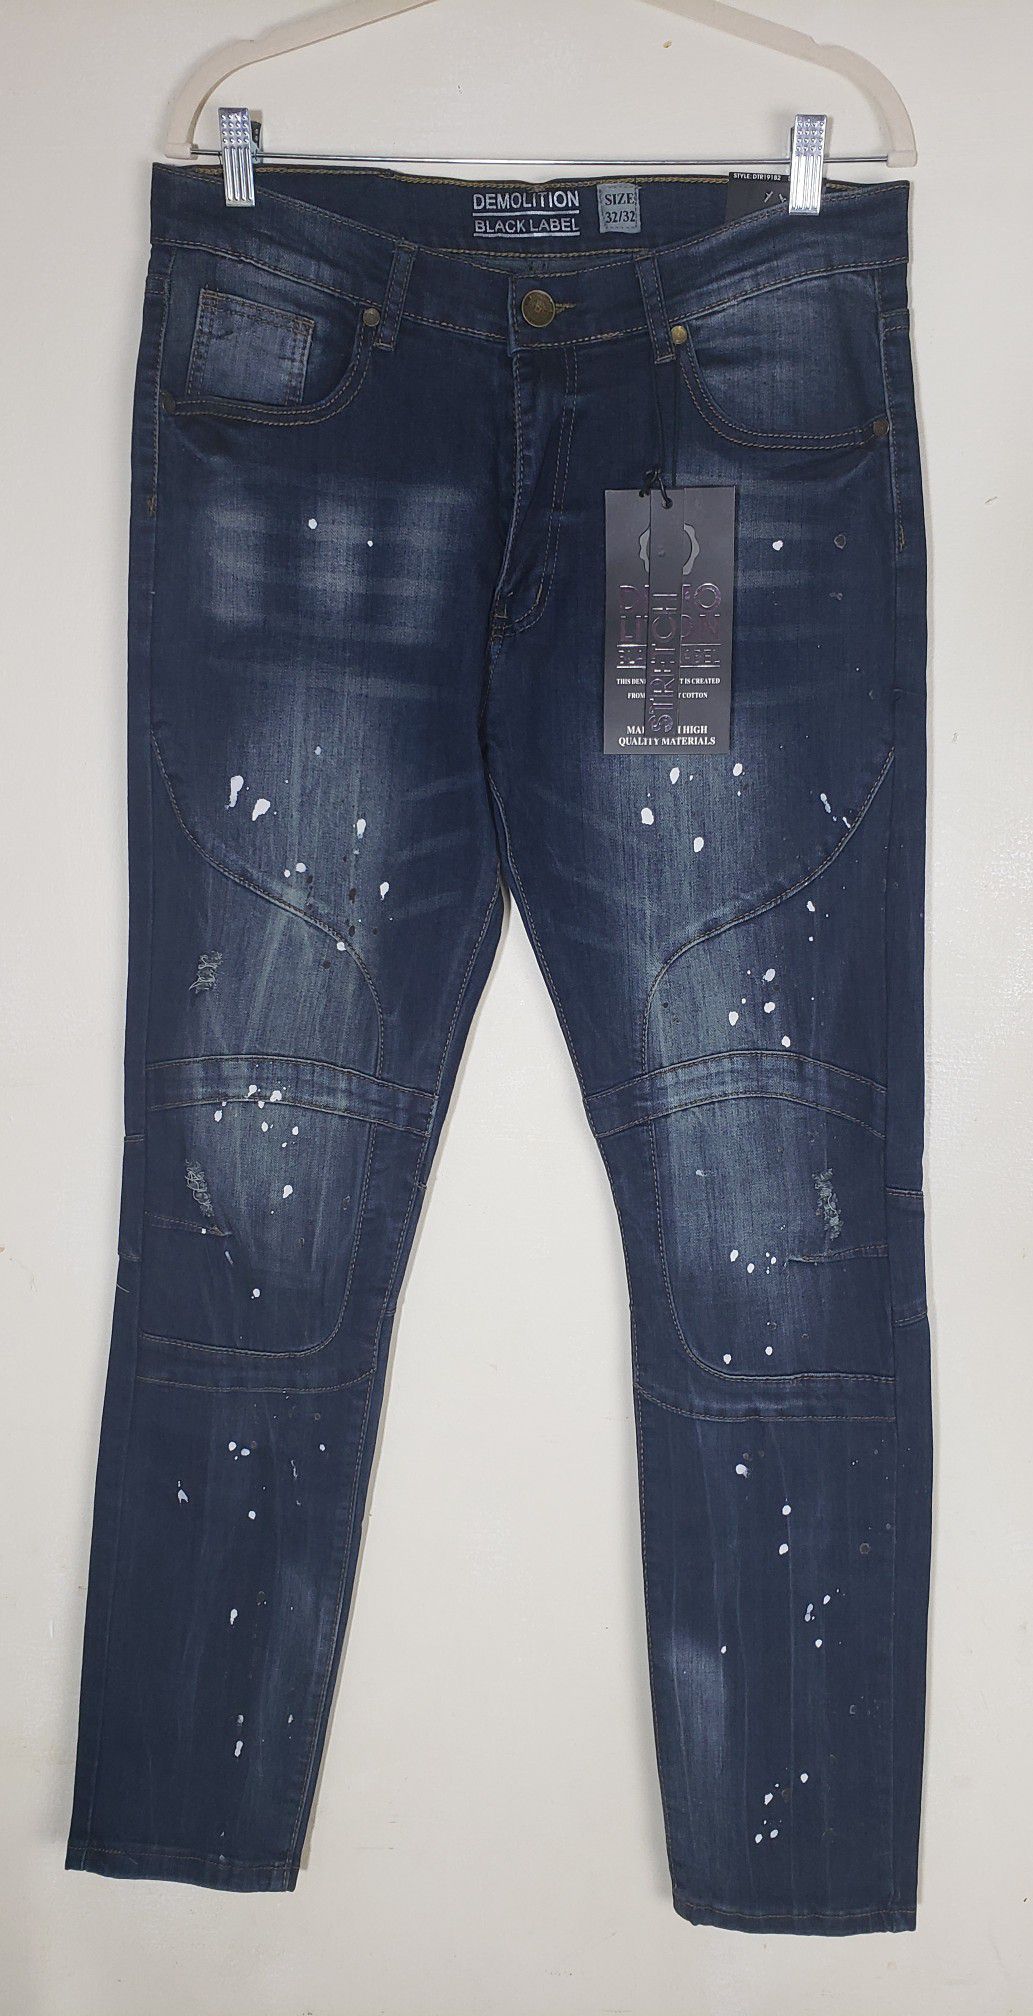 Demolition Black Label Man jeans Style Dtr19182 Size 32X32